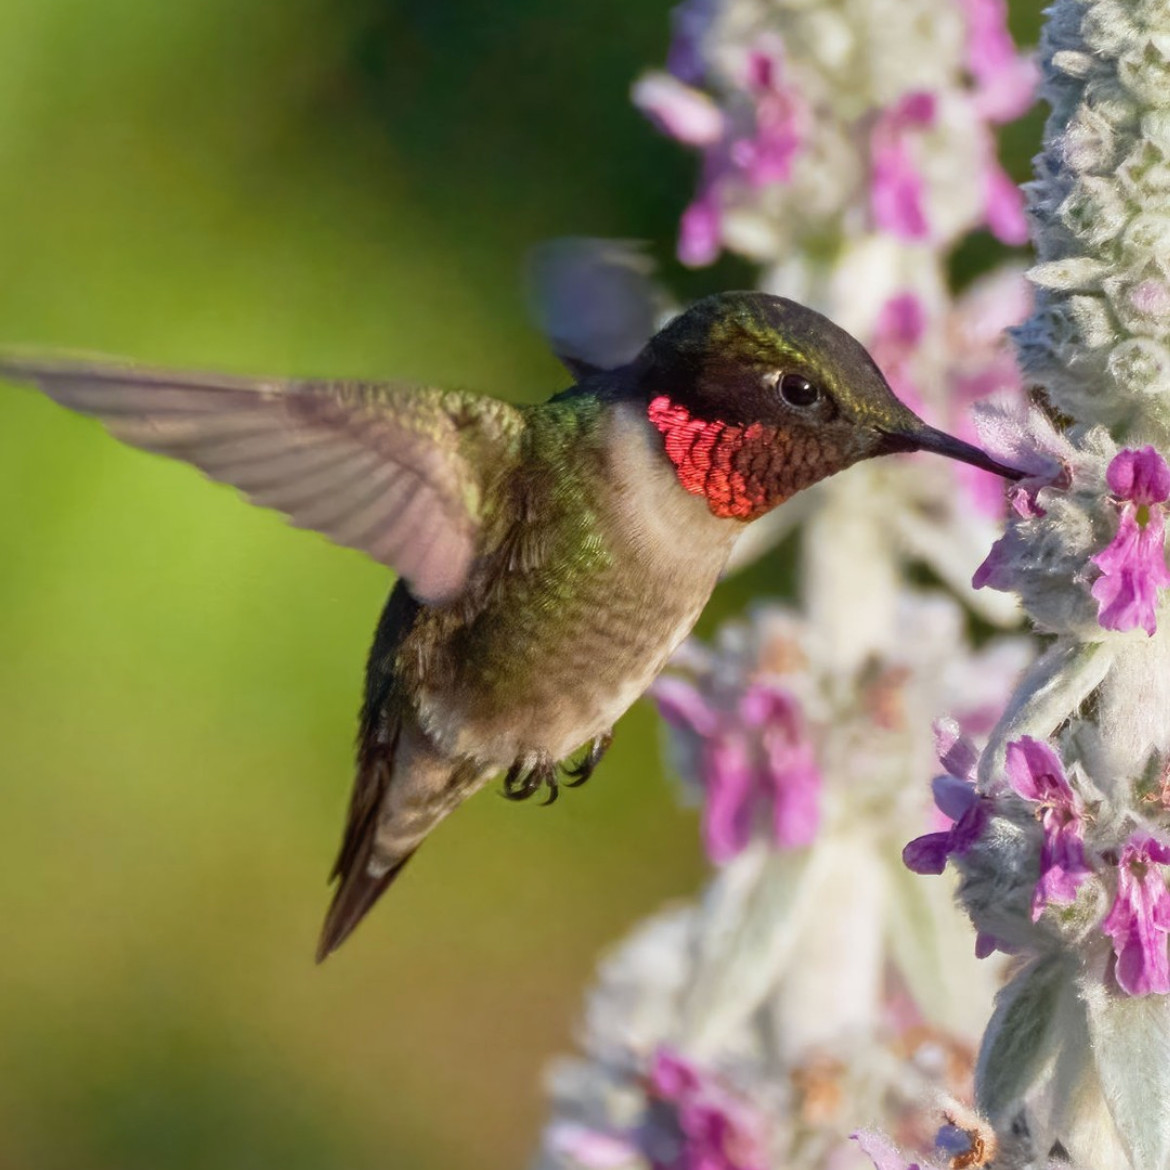 10. Landscaping Cincinnati: How to Attract Hummingbirds